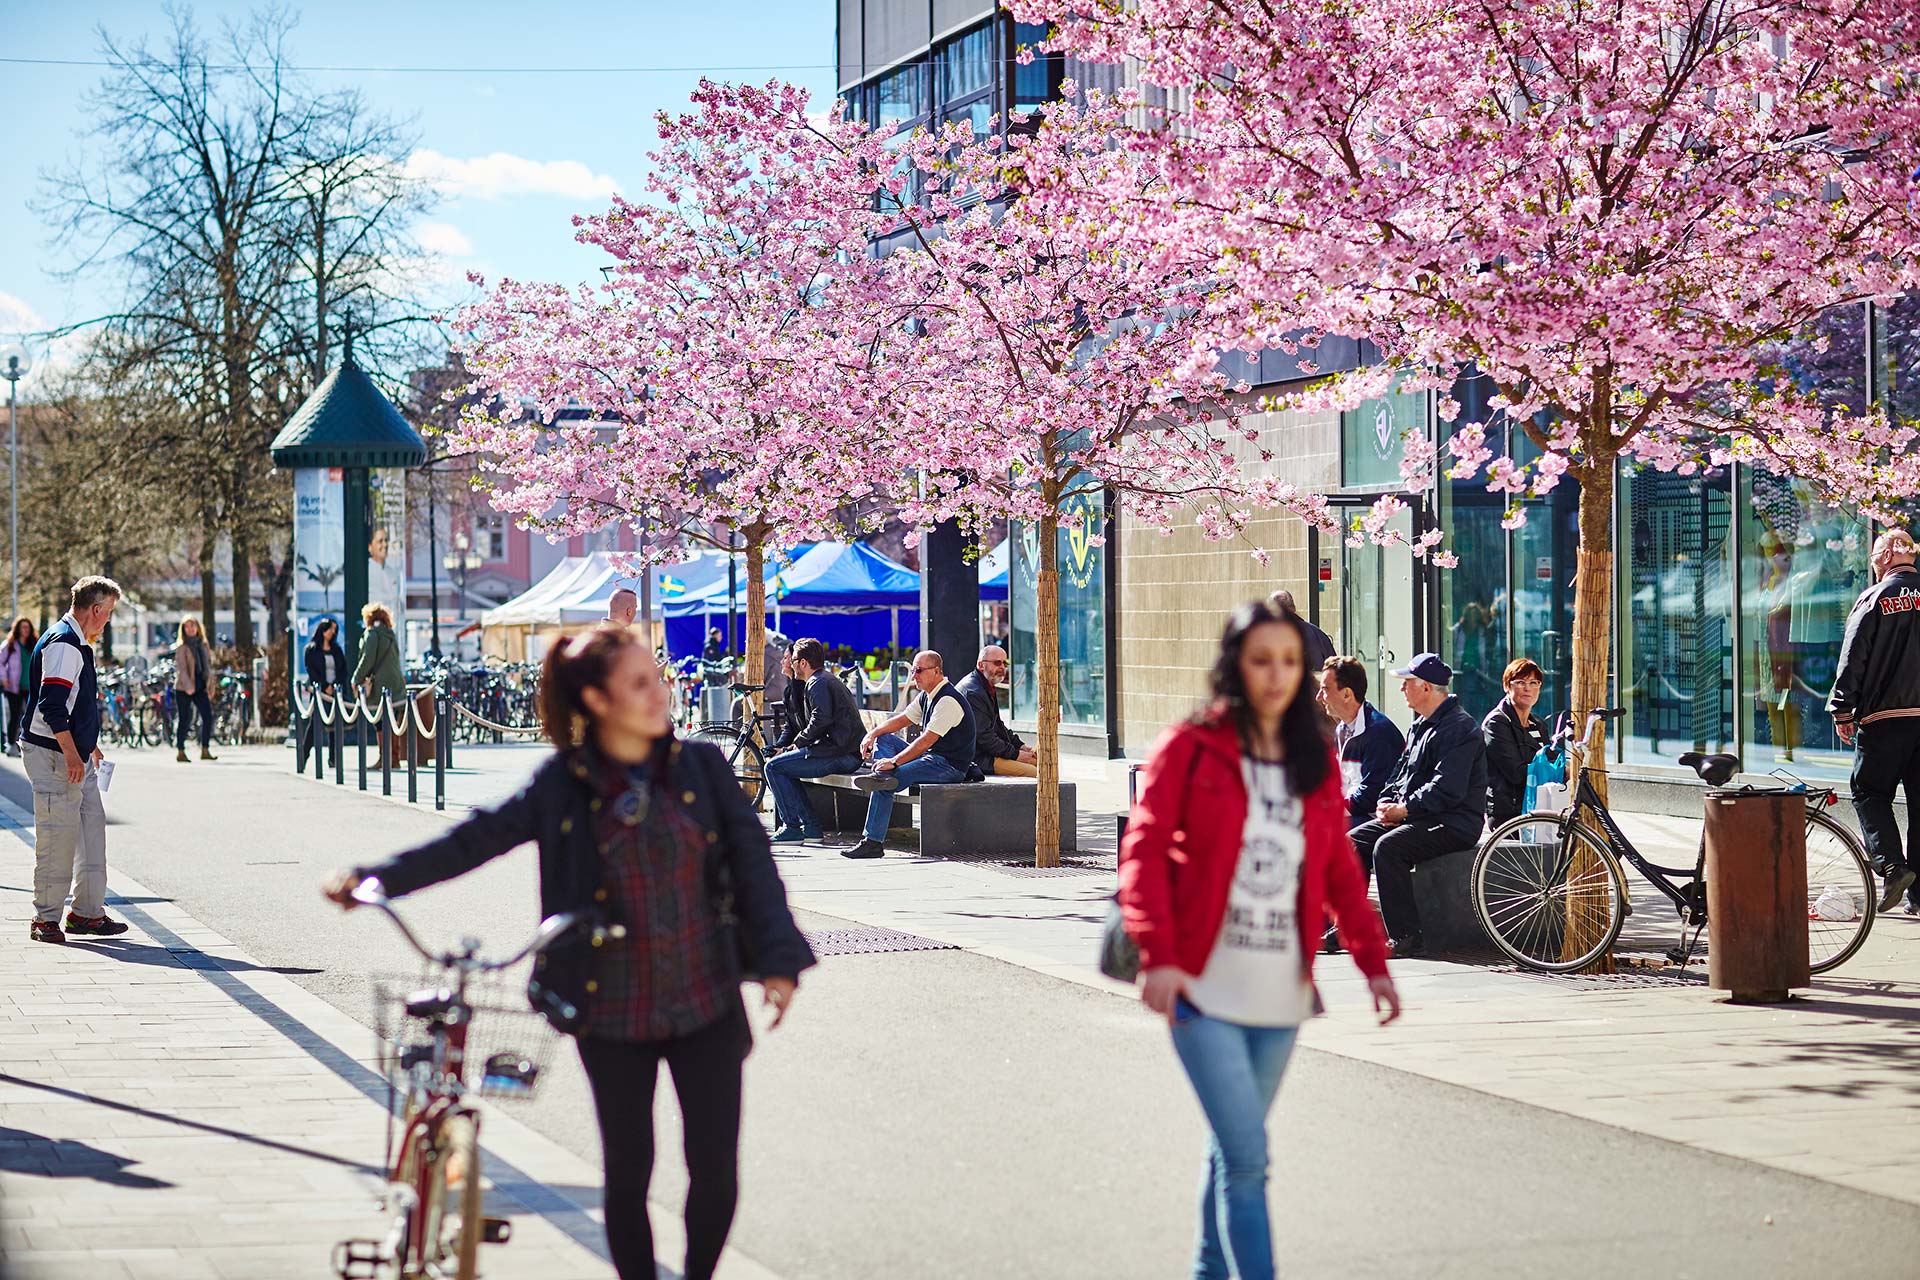 Körsbärsträden i full blom i Västerås City. Två kvinnor går tillsammans i förgrunden. Fotograf: Pia Nordlander